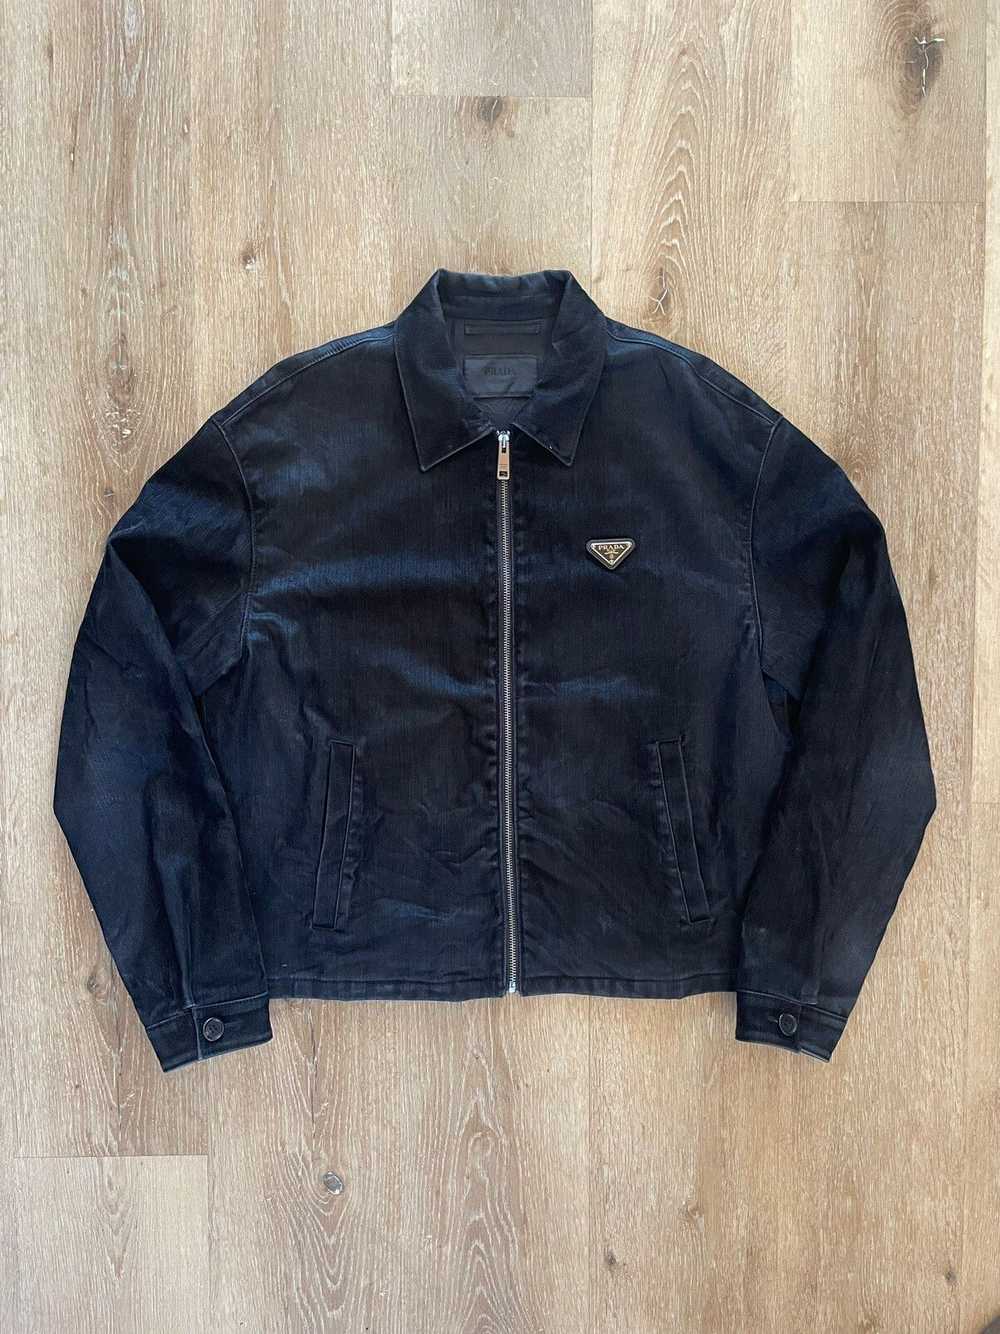 Prada SS22 Velvet Denim Blouson Jacket worn by Fr… - image 4